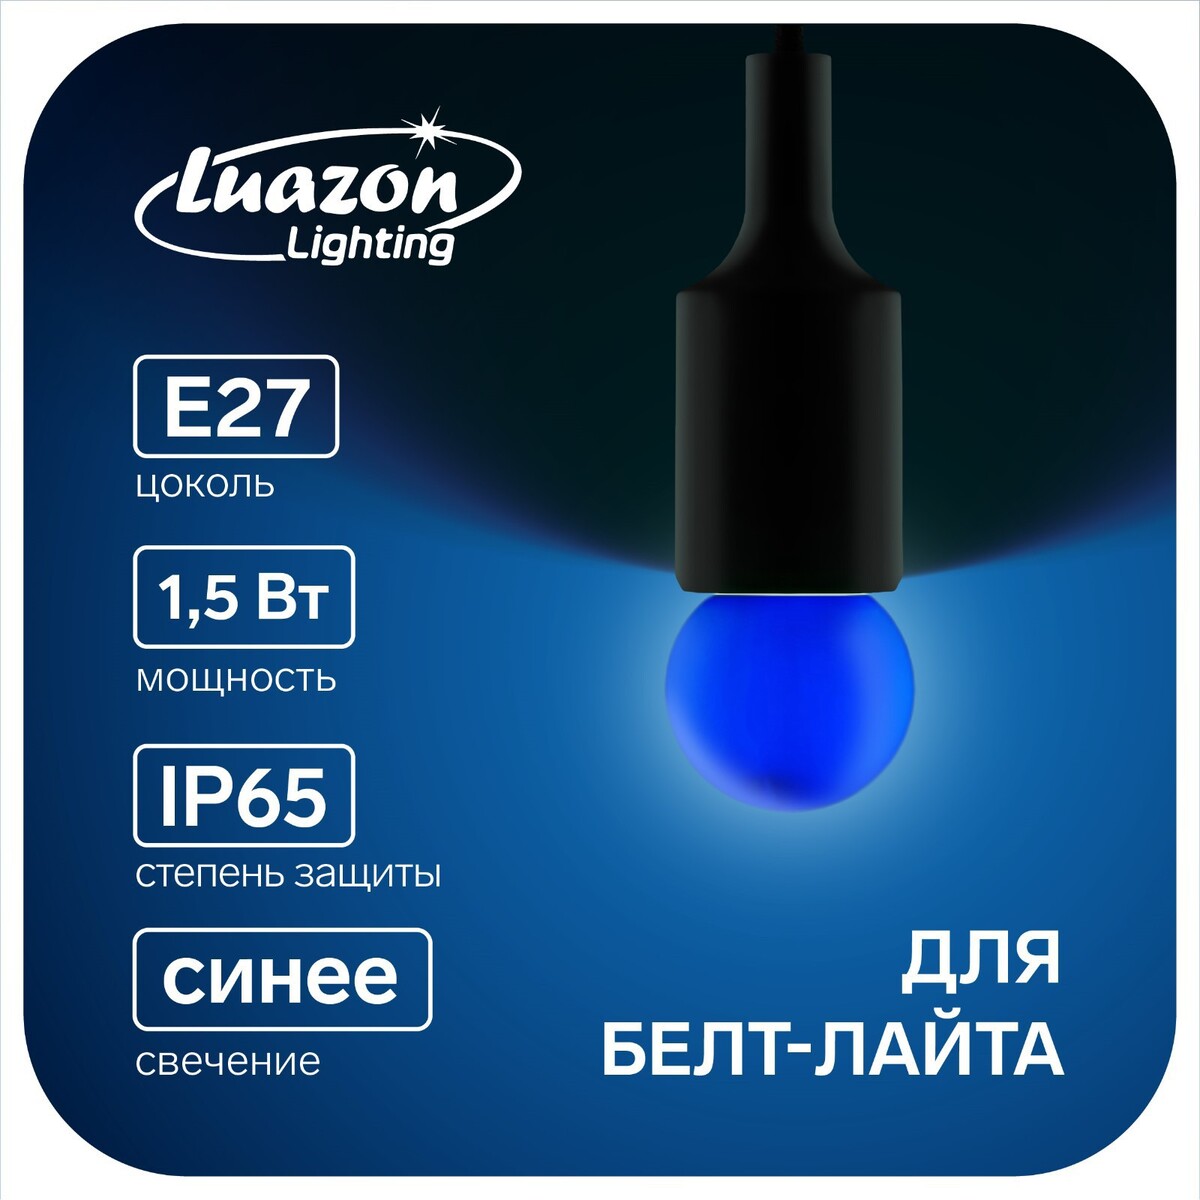 Лампа светодиодная luazon lighting, g45, е27, 1.5 вт, для белт-лайта, синяя, наб 20 шт лампа cветодиодная luazon lighting g45 7 вт e27 630 лм 4000 к дневной свет